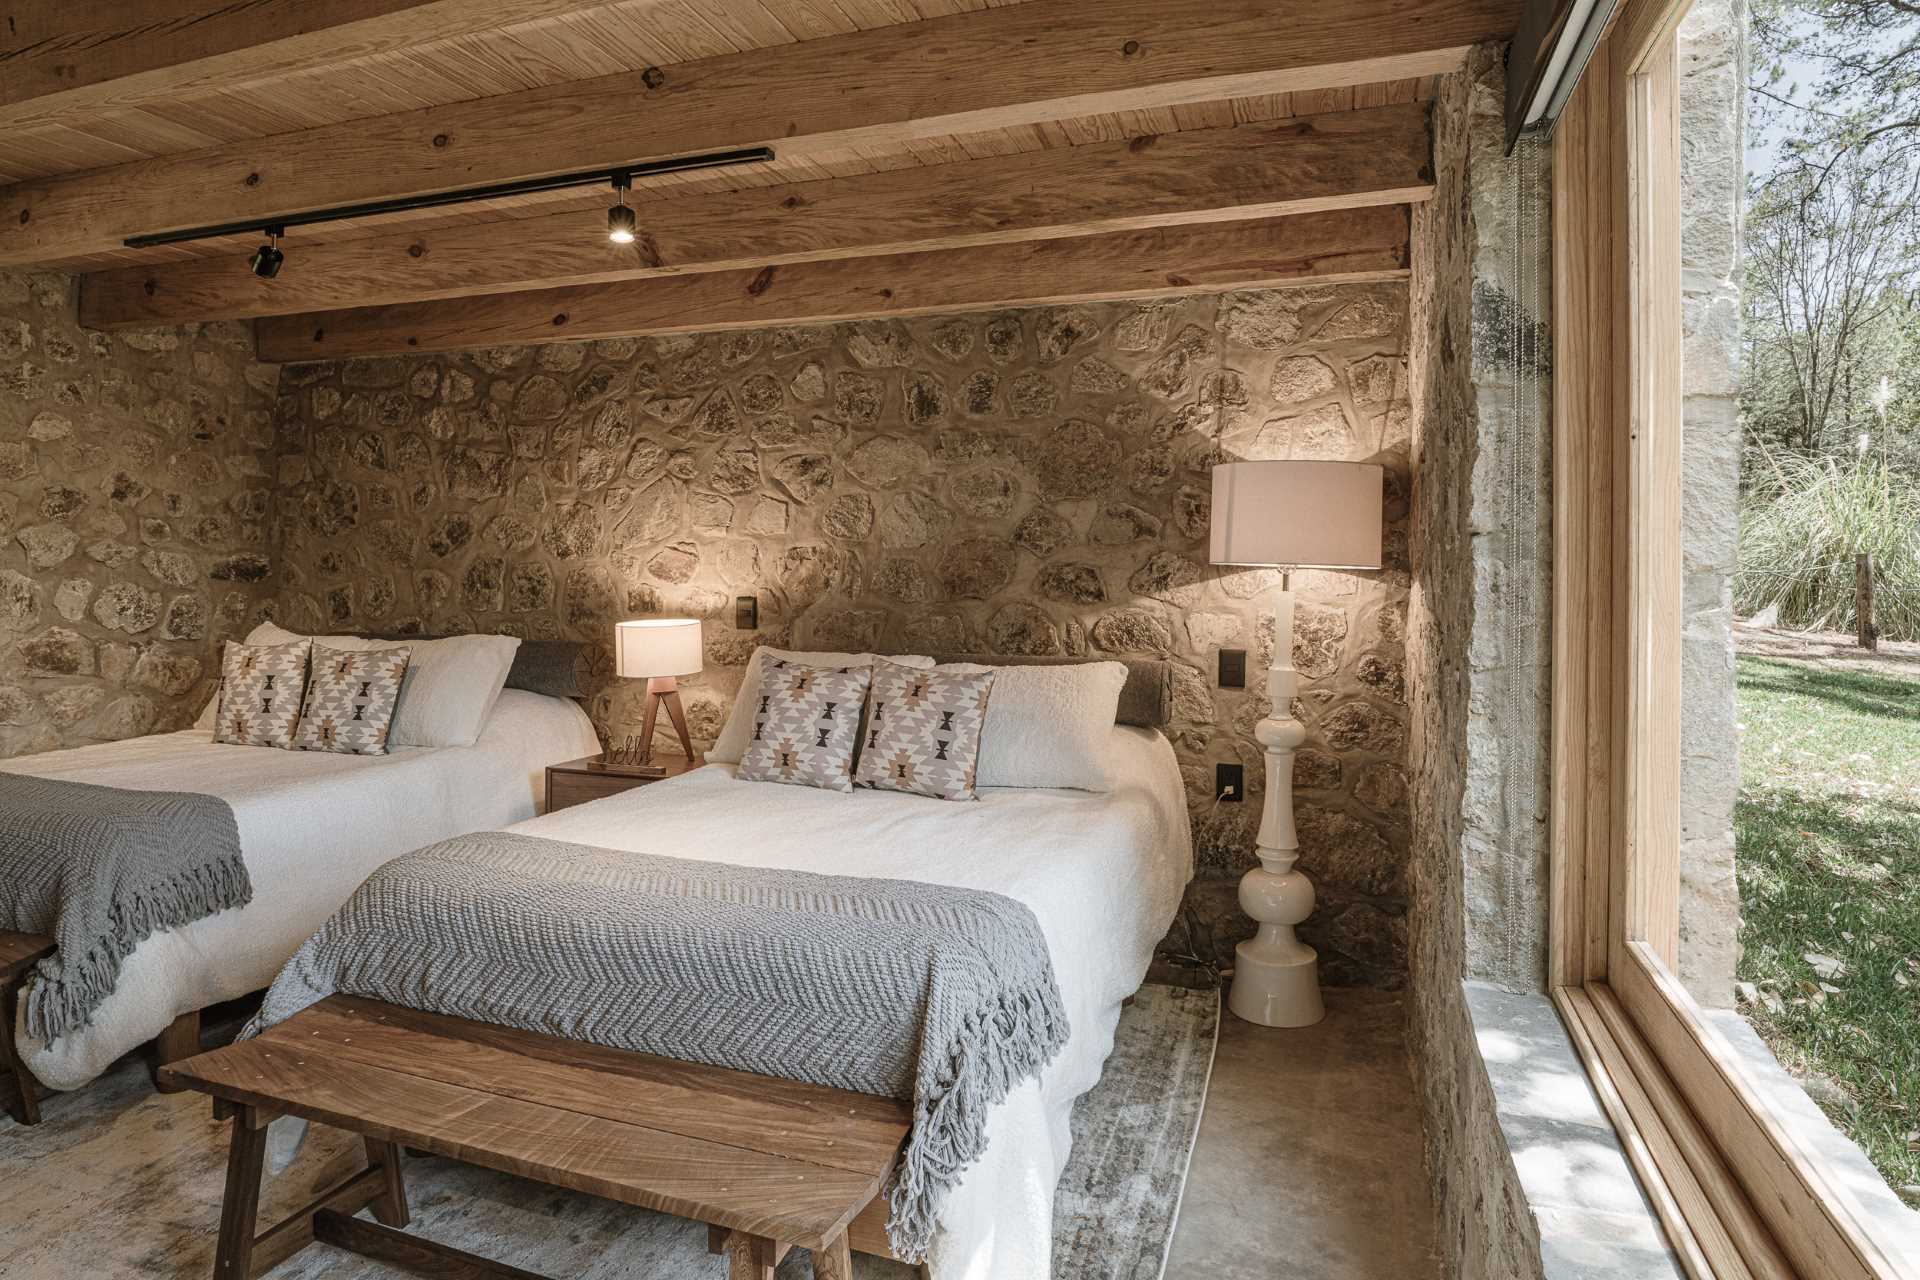 یک اتاق خواب مدرن سنگ و چوب با دو تخت و کابینت توکار.